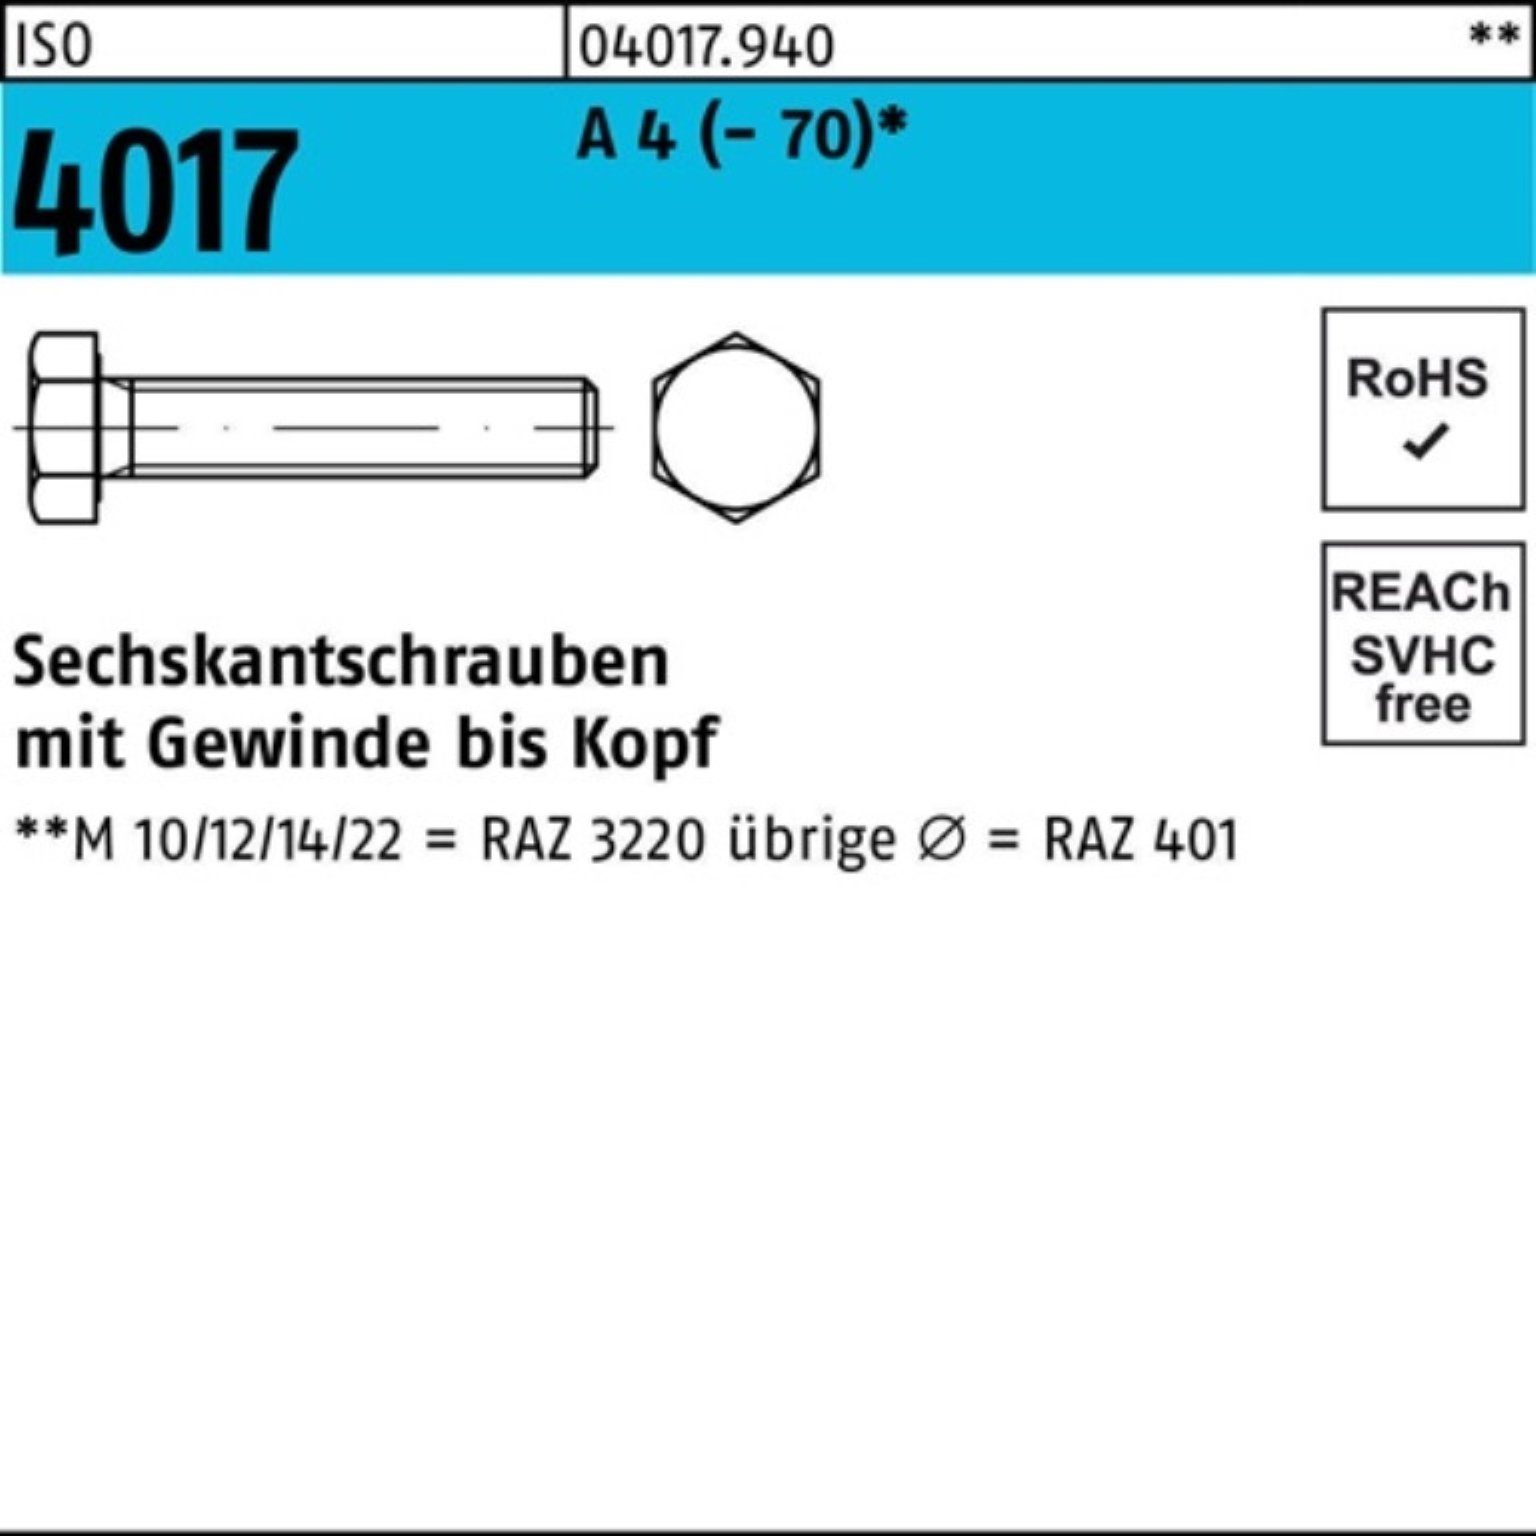 Bufab Sechskantschraube 100er Pack Sechskantschraube ISO 4017 VG M8x 150 A 4 (70) 1 Stück I